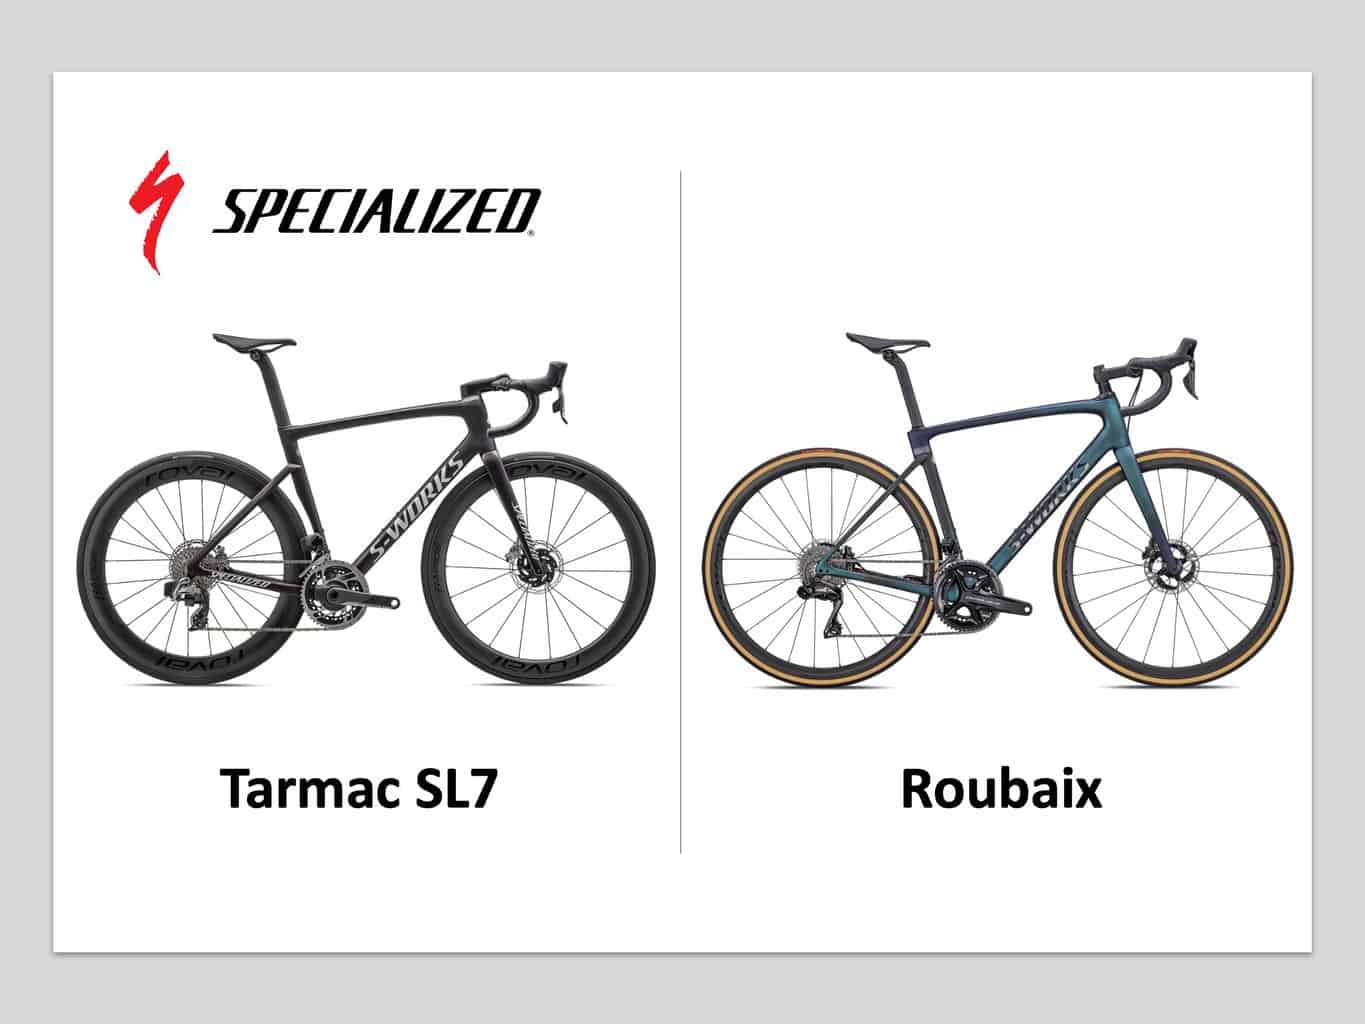 Specialized Tarmac SL7 vs Roubaix